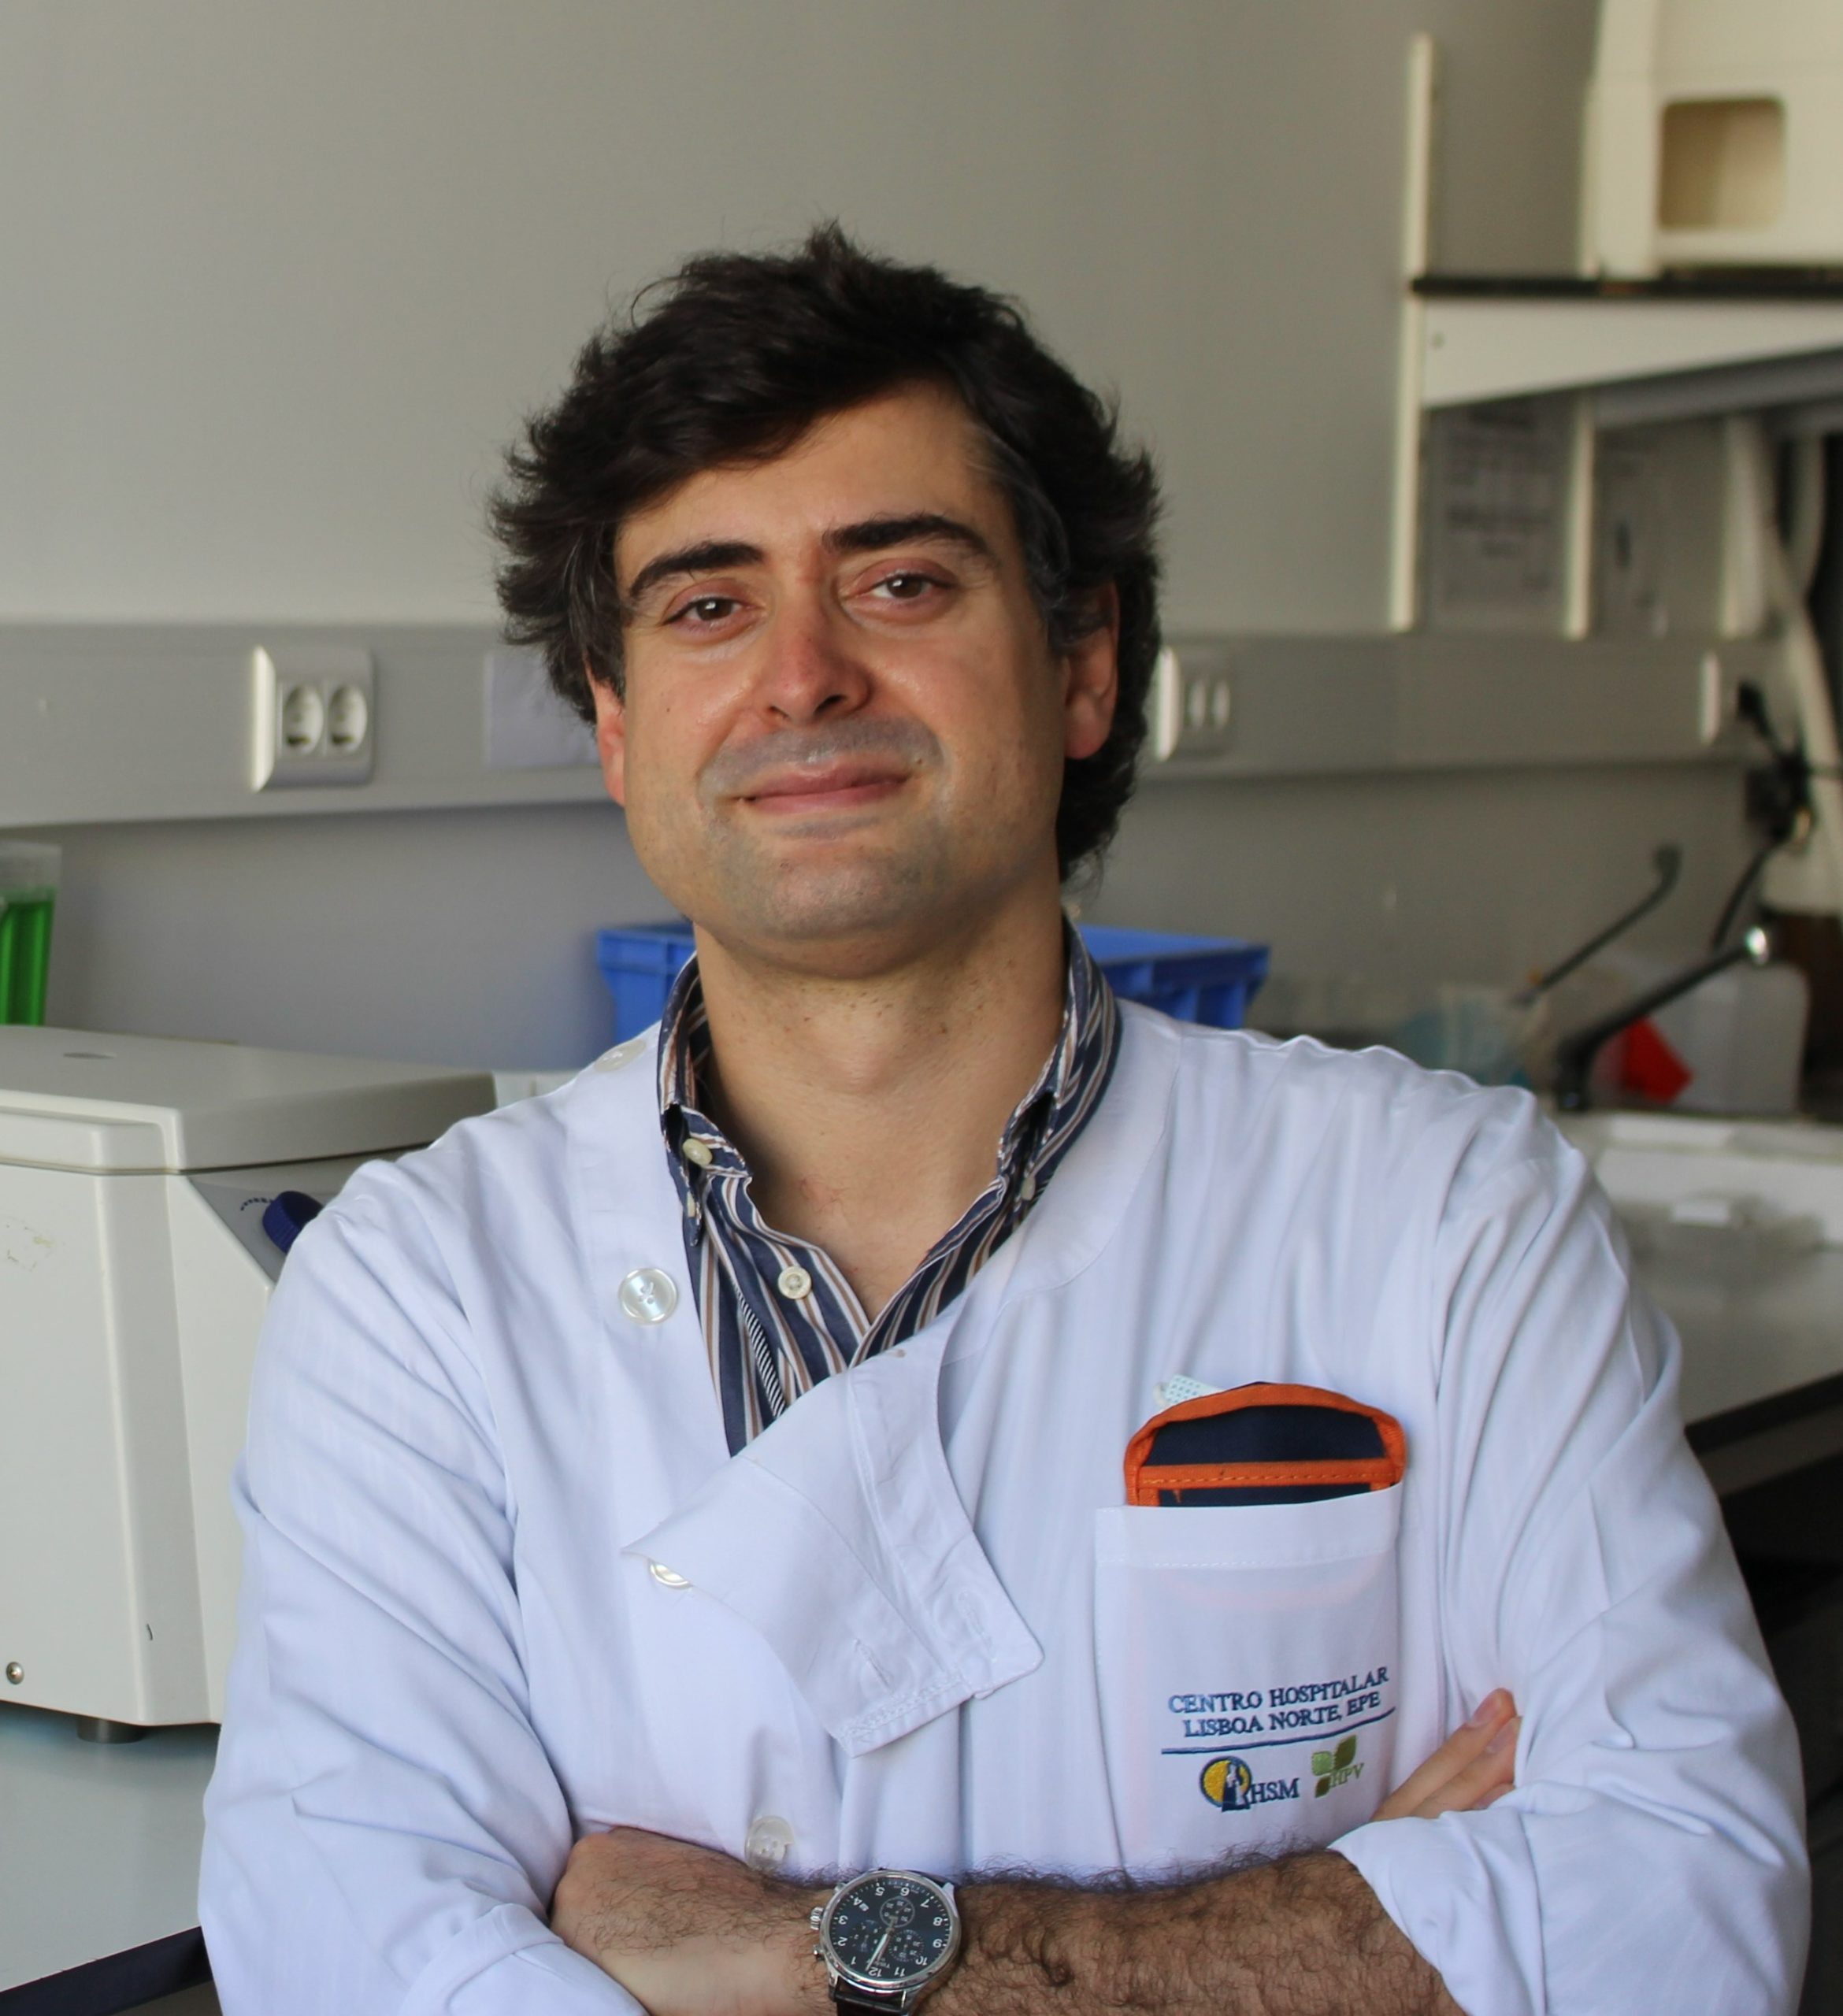 Pedro Marques, MD, PhD